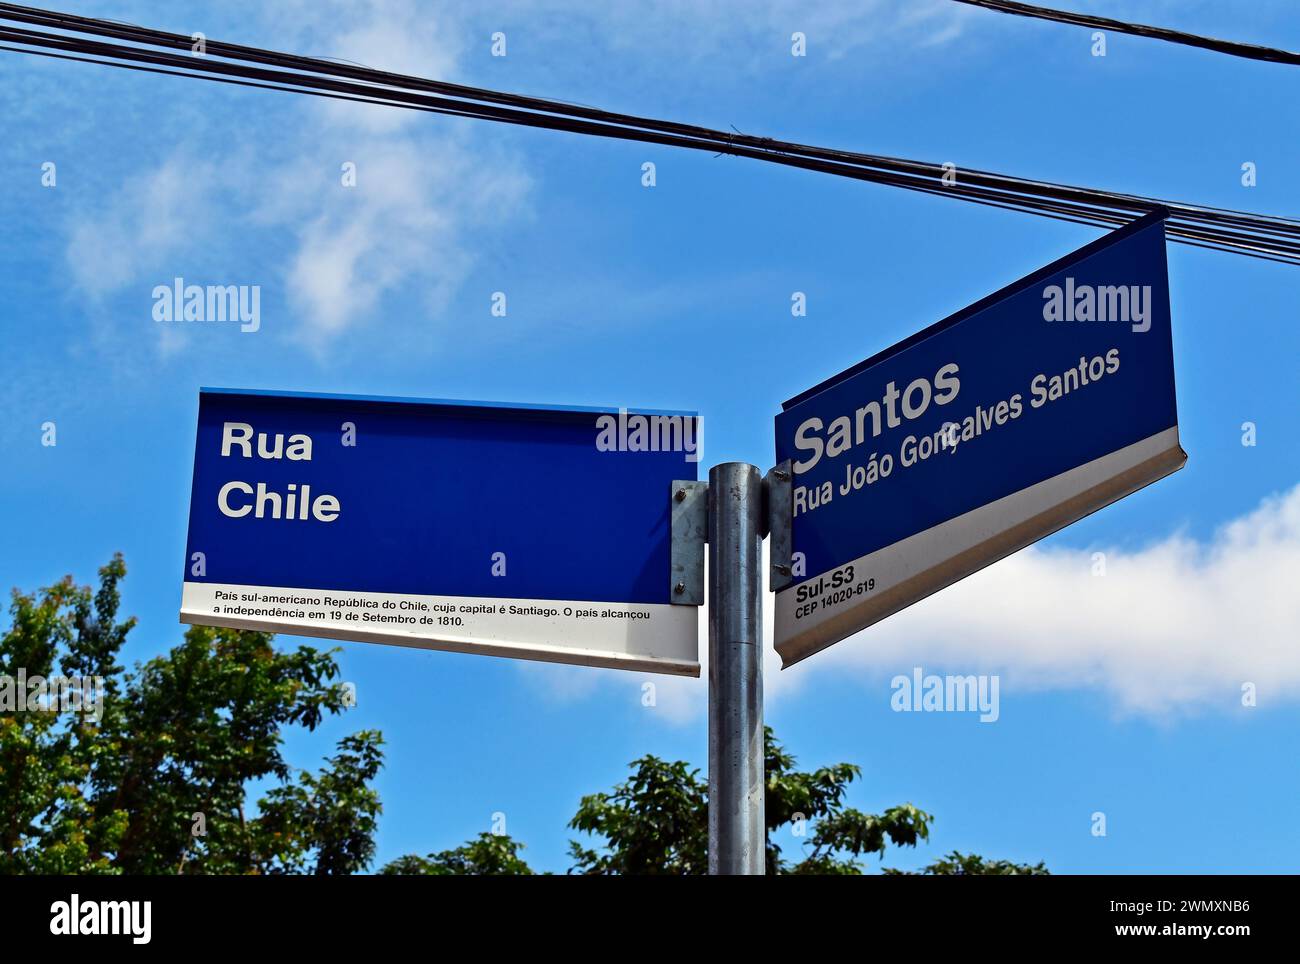 Straßenschild und blauer Himmel mit Wolken, Ribeirao Preto, Sao Paulo, Brasilien Stockfoto